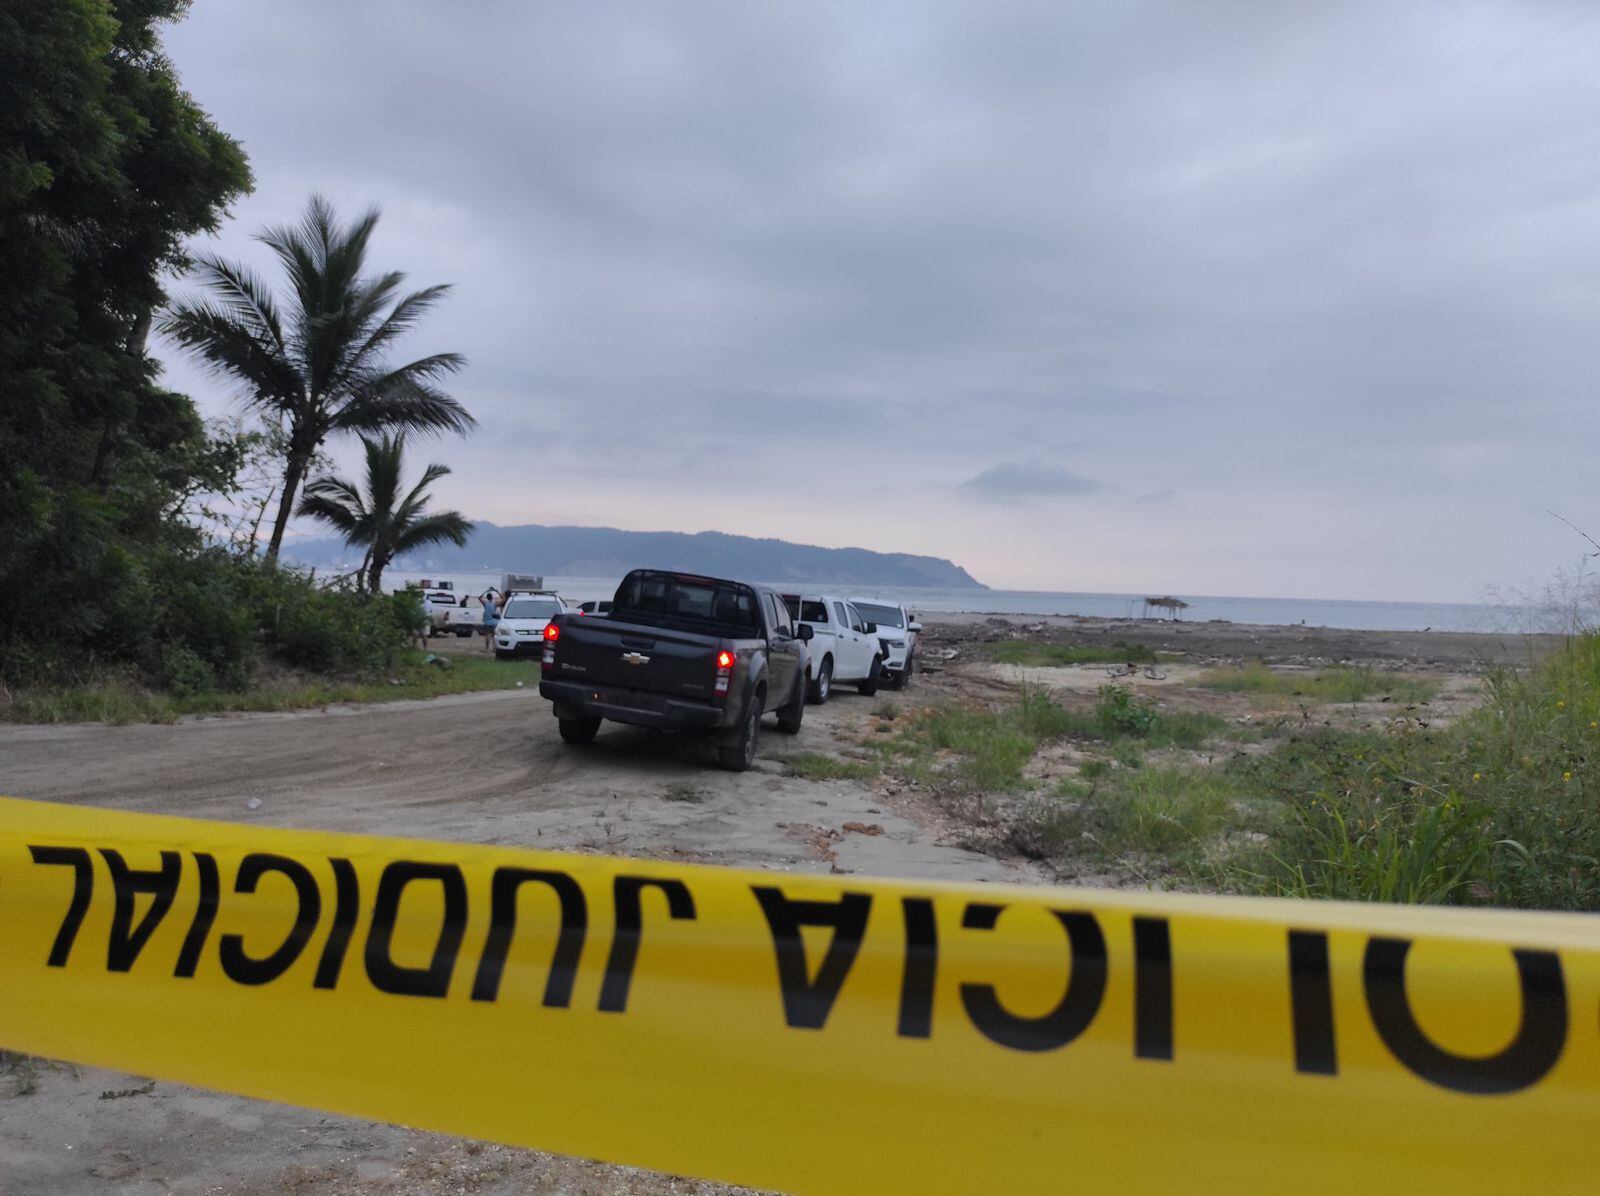 La alcaldesa de San Vicente, Brigitte García, y su asesor de comunicación, Jairo Loor, fueron asesinados cuando estaban en un carro en la playa del sector Punta Napo.